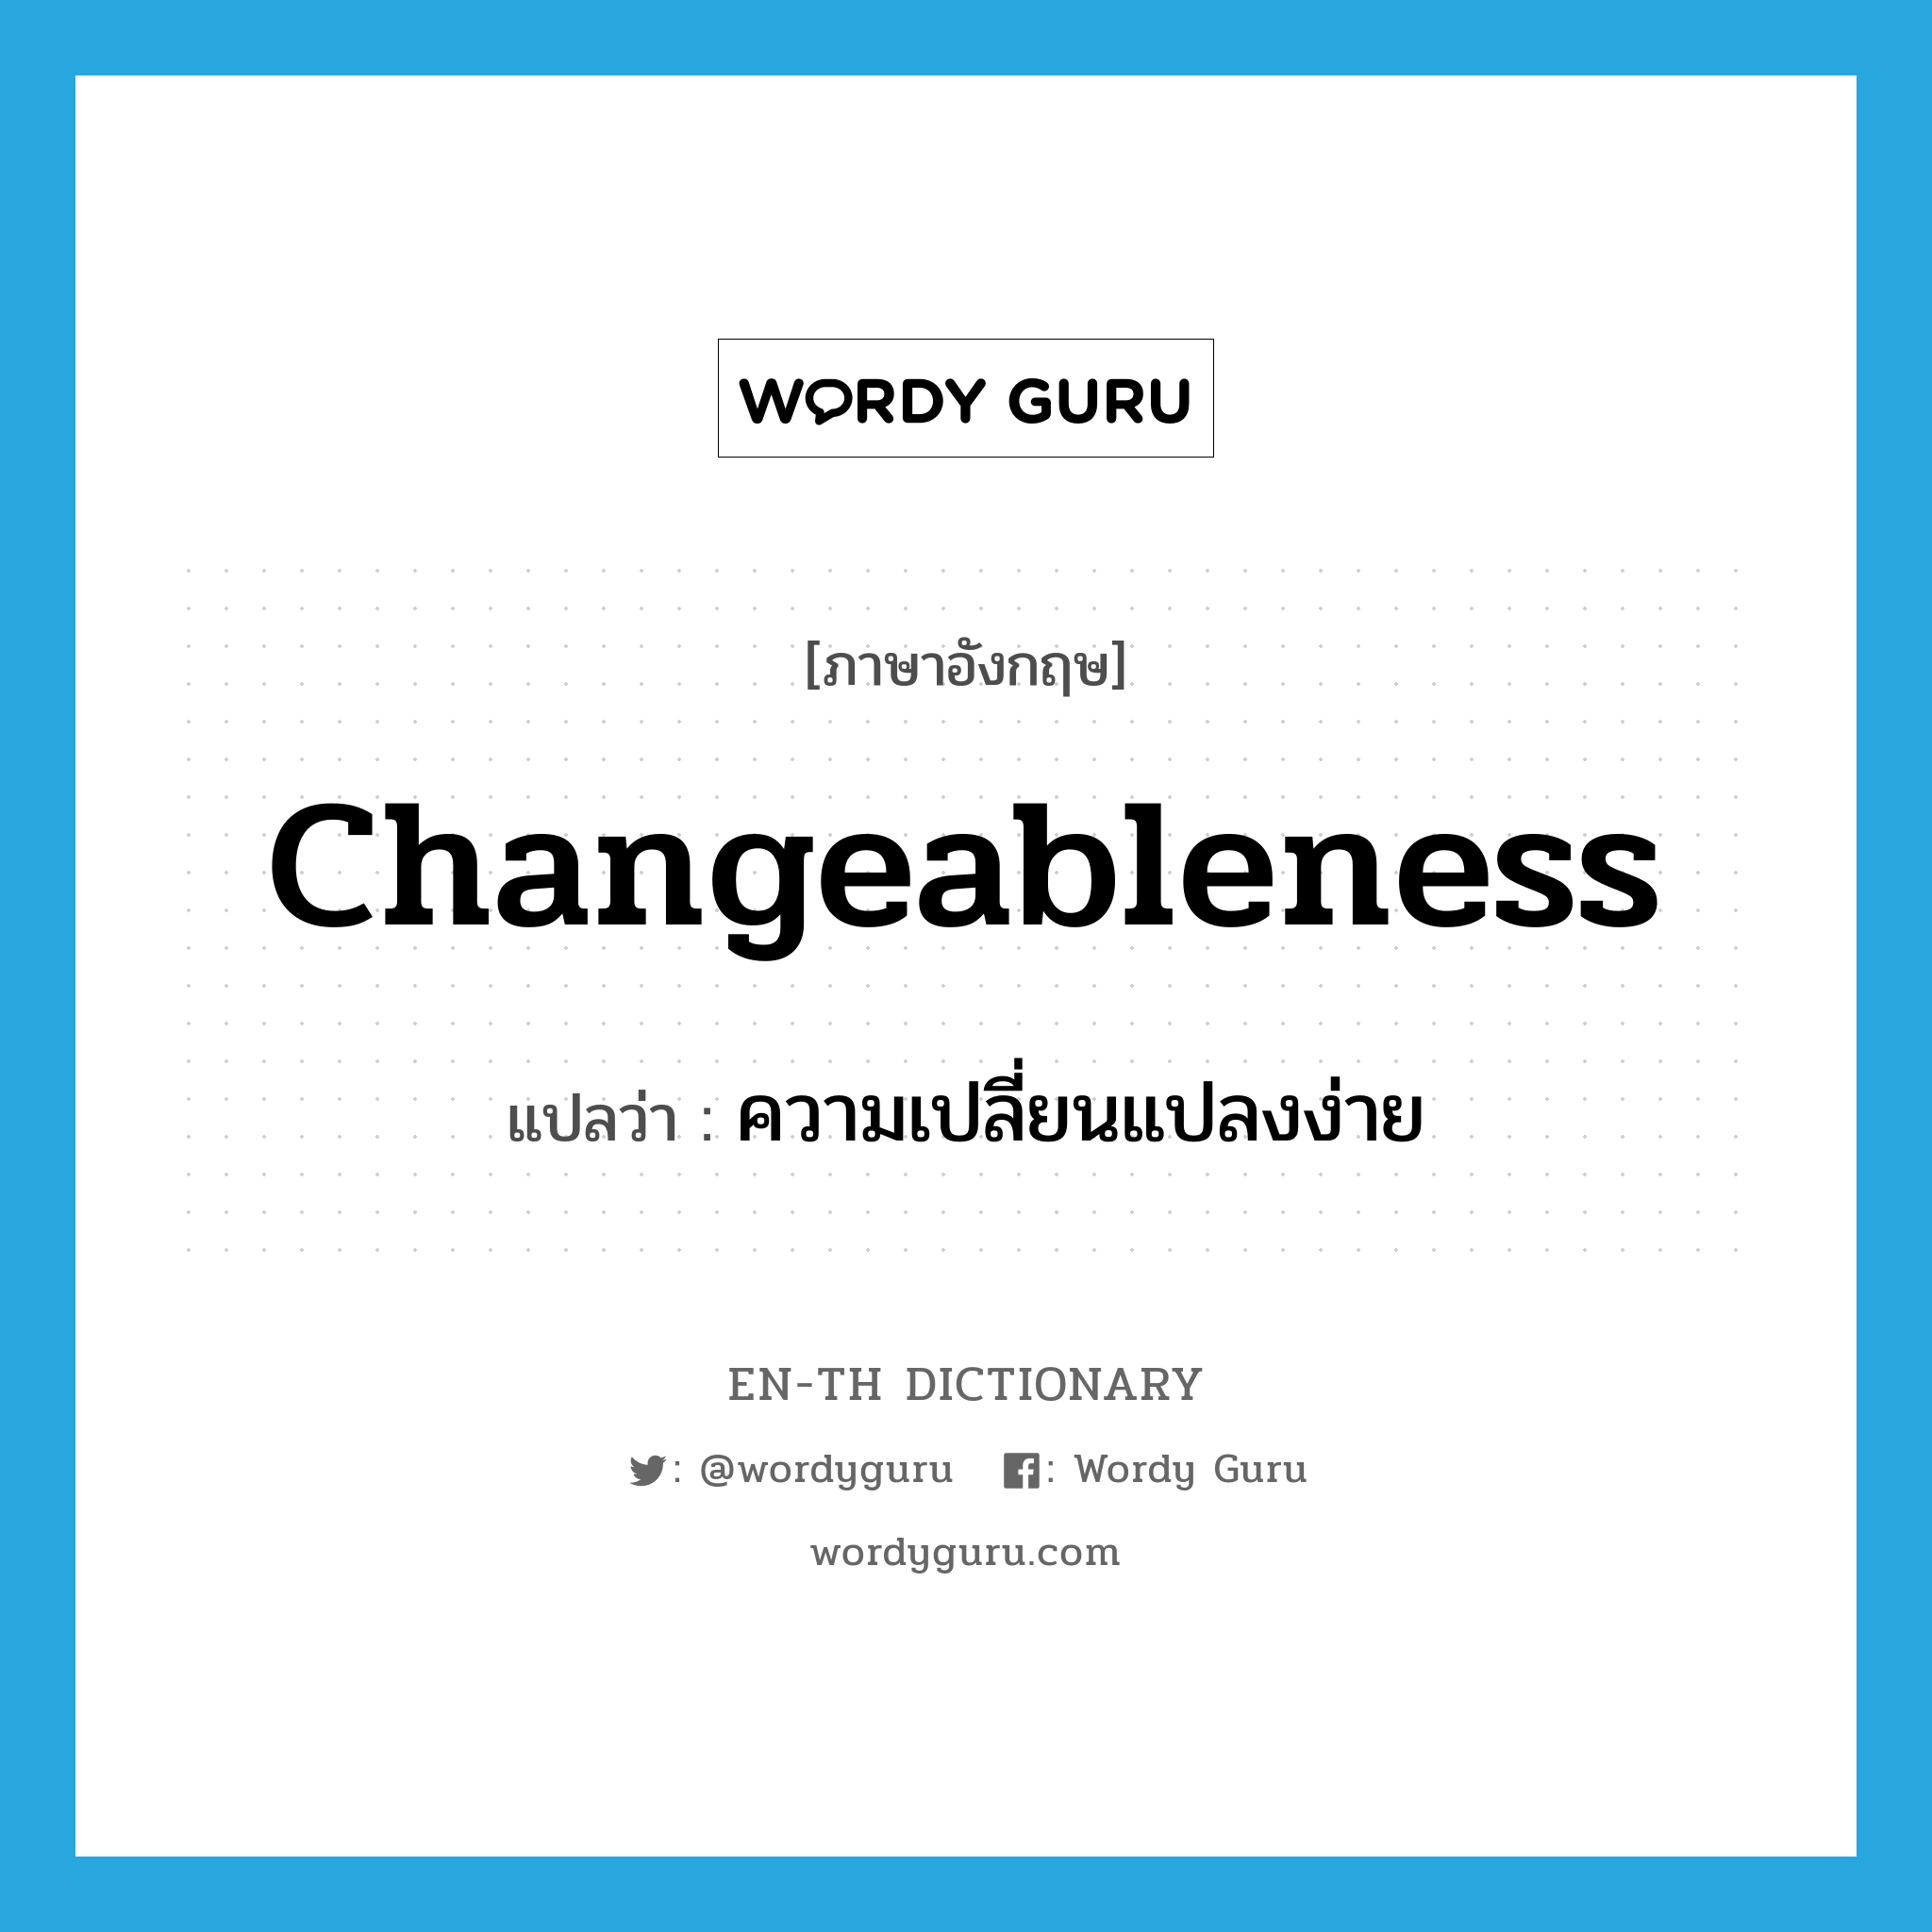 ความเปลี่ยนแปลงง่าย ภาษาอังกฤษ?, คำศัพท์ภาษาอังกฤษ ความเปลี่ยนแปลงง่าย แปลว่า changeableness ประเภท N หมวด N